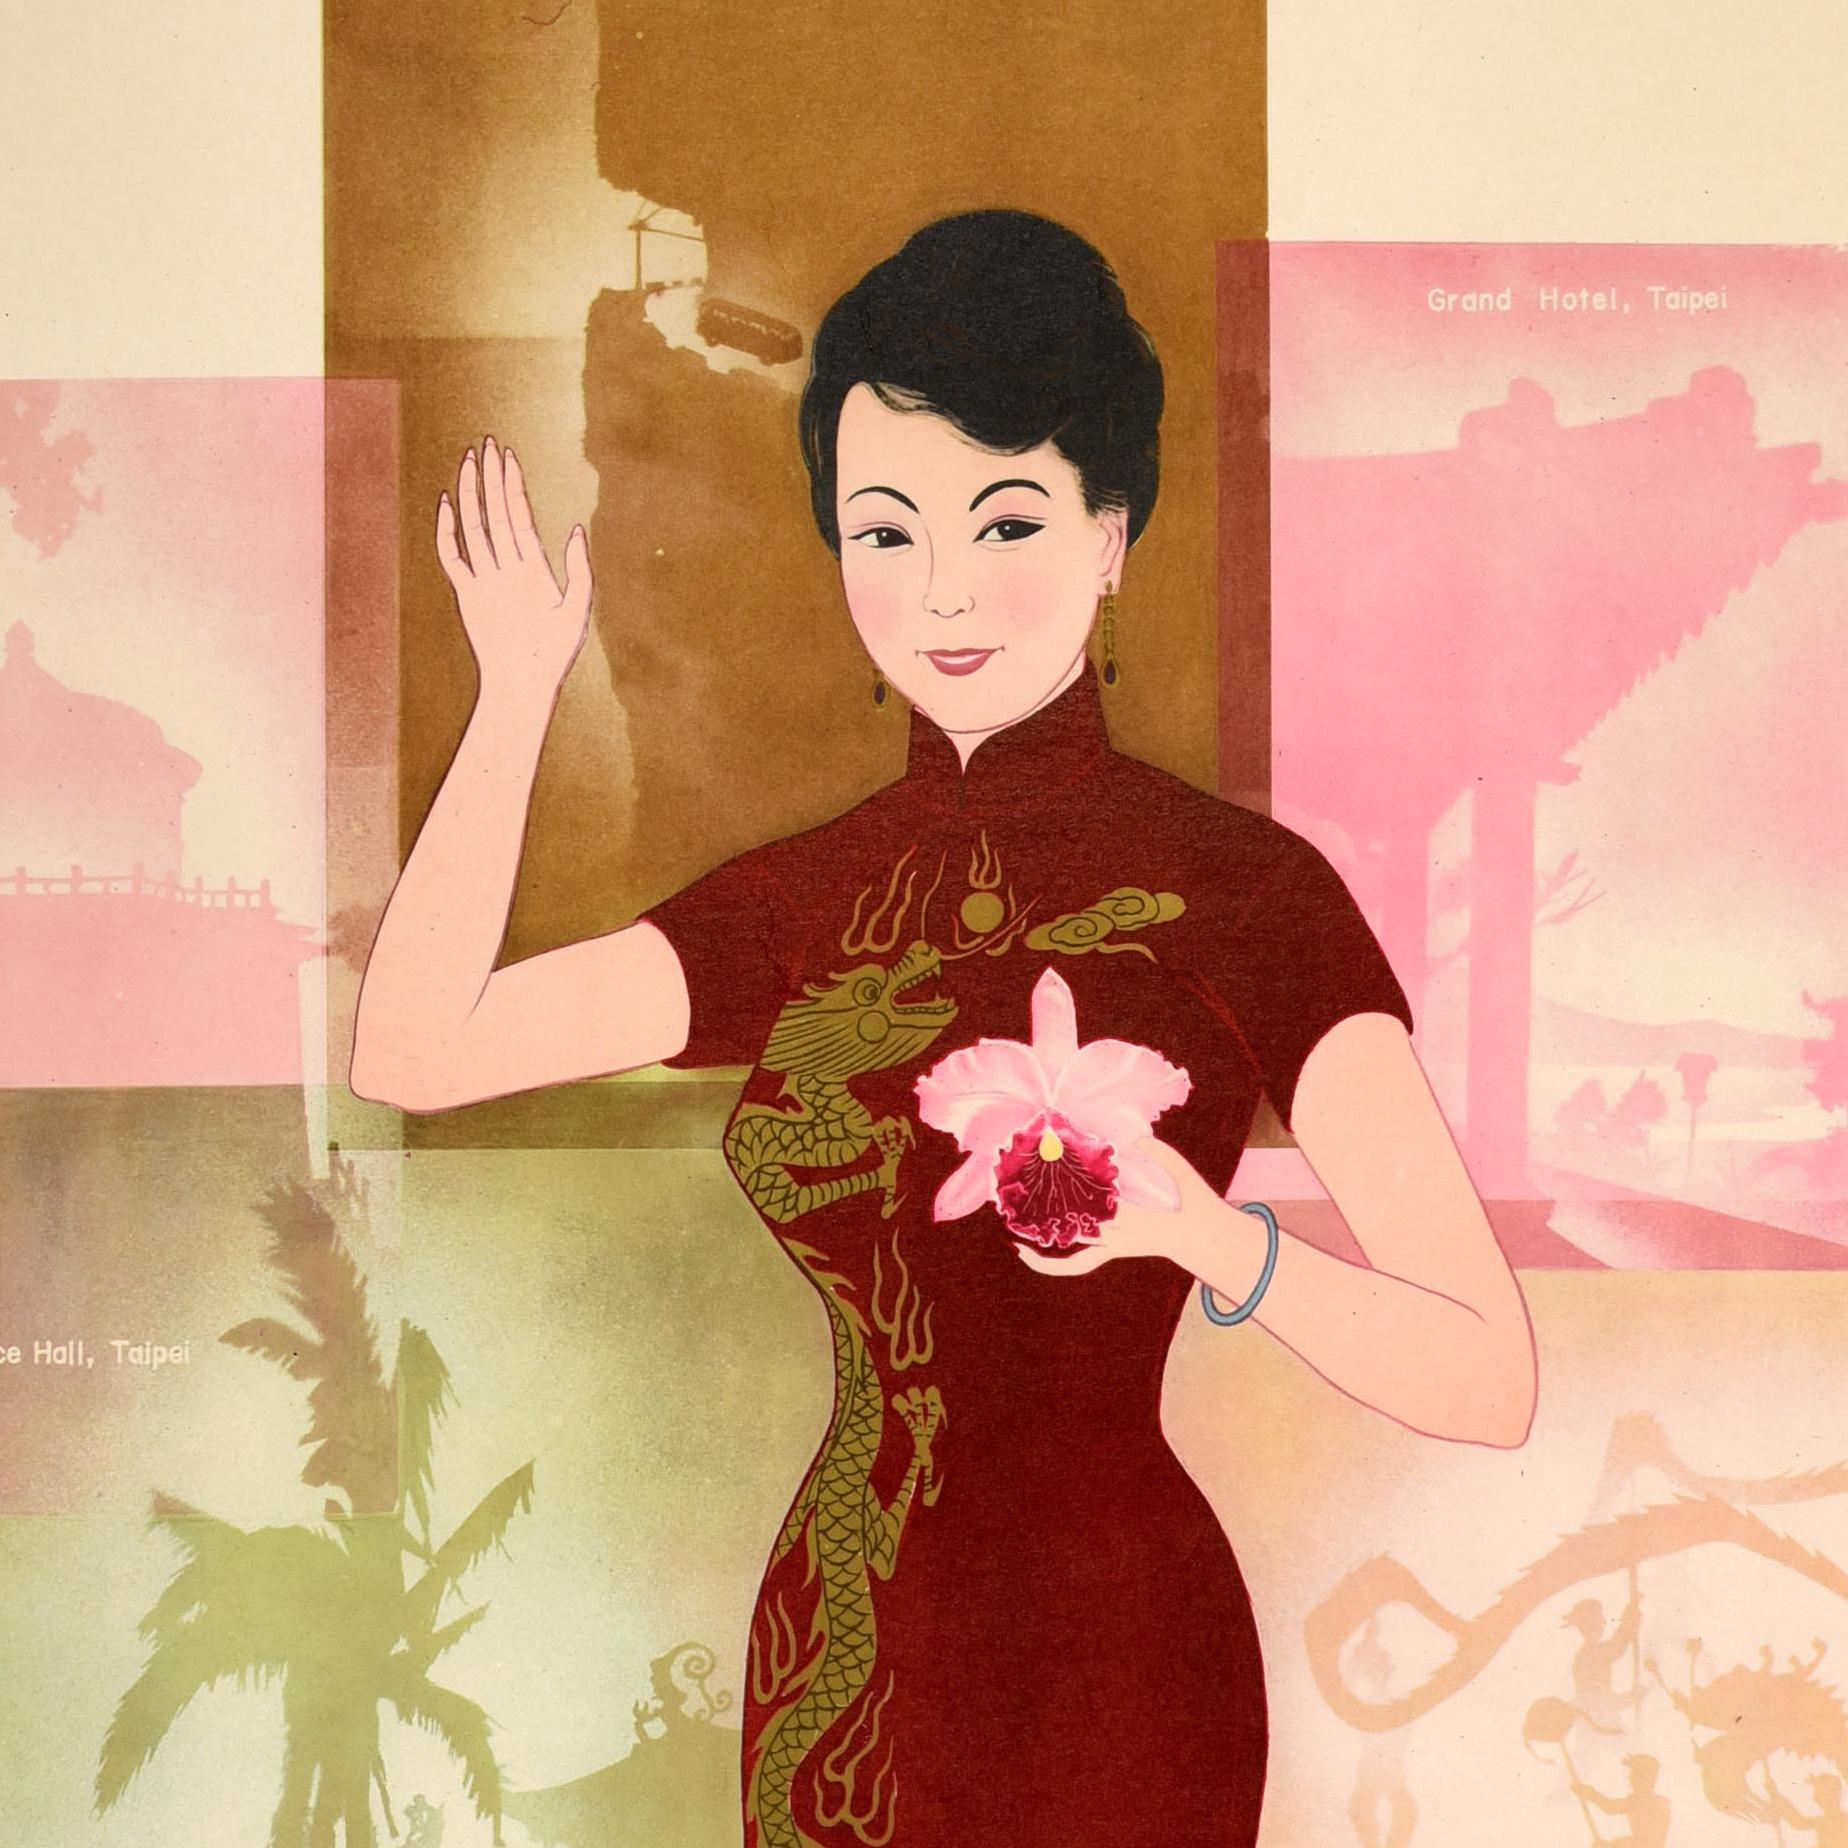 Affiche de voyage originale pour Taïwan, République de Chine, émise par l'Association des visiteurs de Taïwan, représentant une dame portant une robe cheongsam traditionnelle rouge ornée d'un dragon sur le côté, tenant une fleur, souriant et saluant